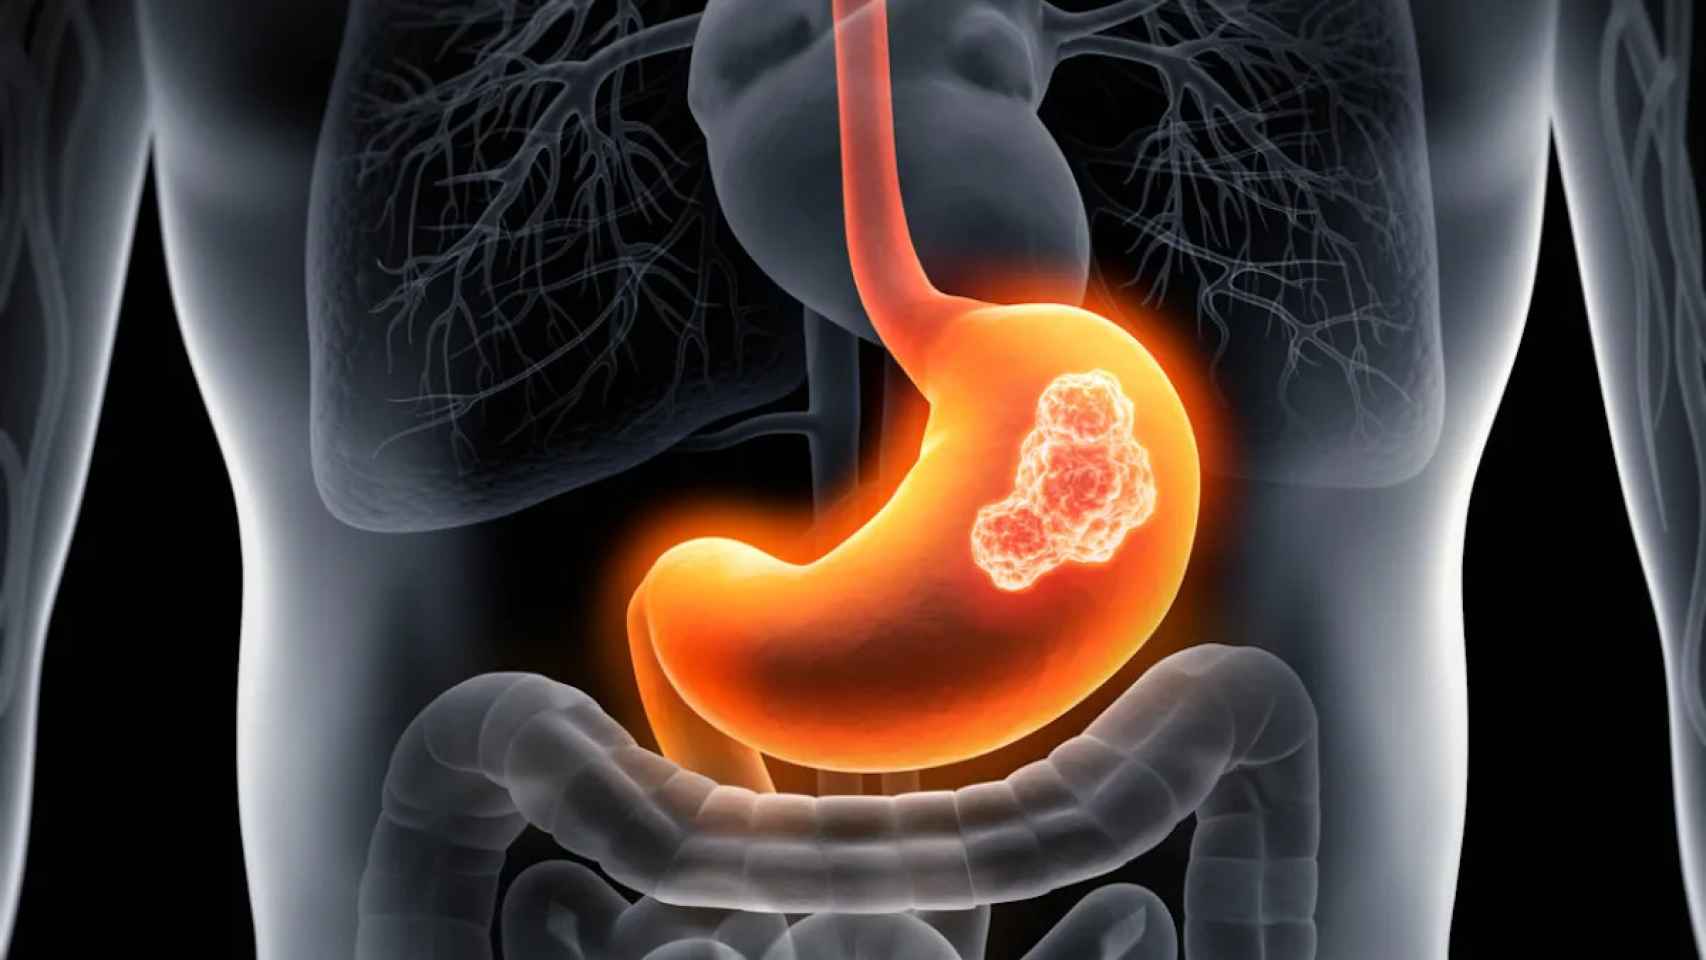 La acalasia es un trastorno del aparato digestivo